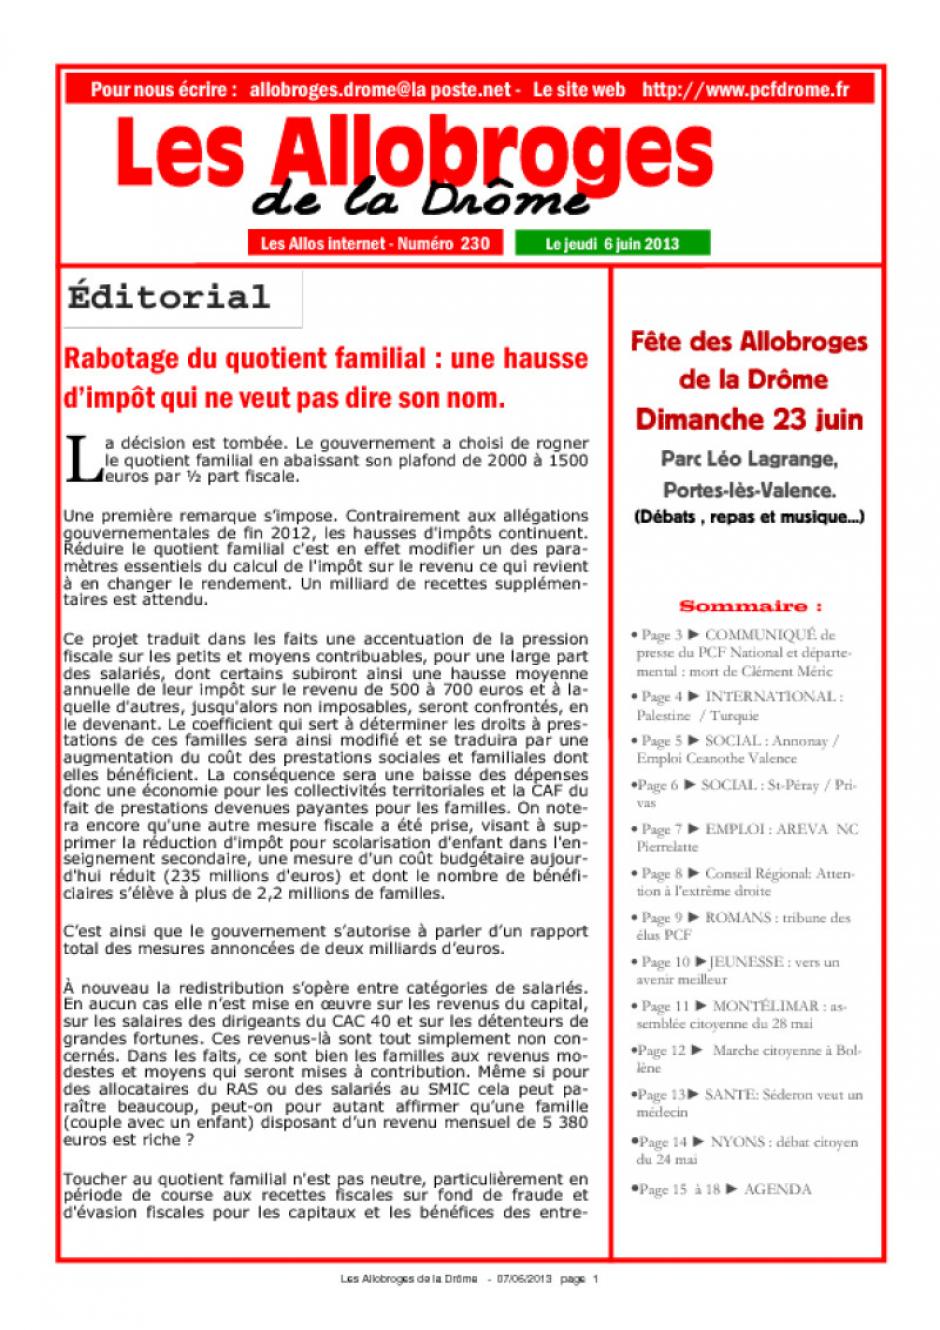 Les Allobroges de la Drôme n°230 du 6 juin 2013